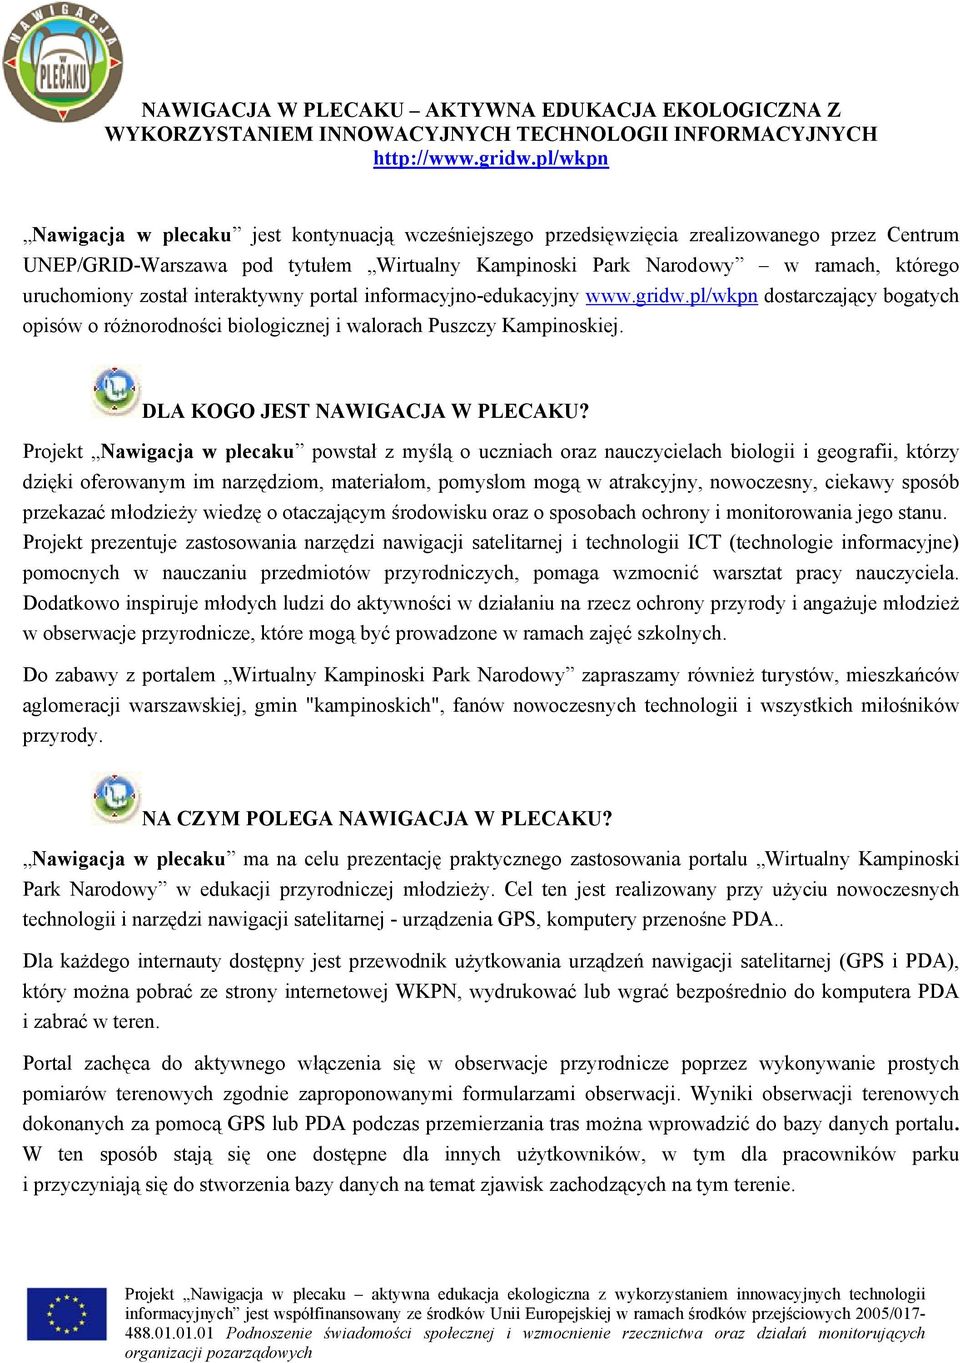 uruchomiony został interaktywny portal informacyjno-edukacyjny www.gridw.pl/wkpn dostarczający bogatych opisów o różnorodności biologicznej i walorach Puszczy Kampinoskiej.